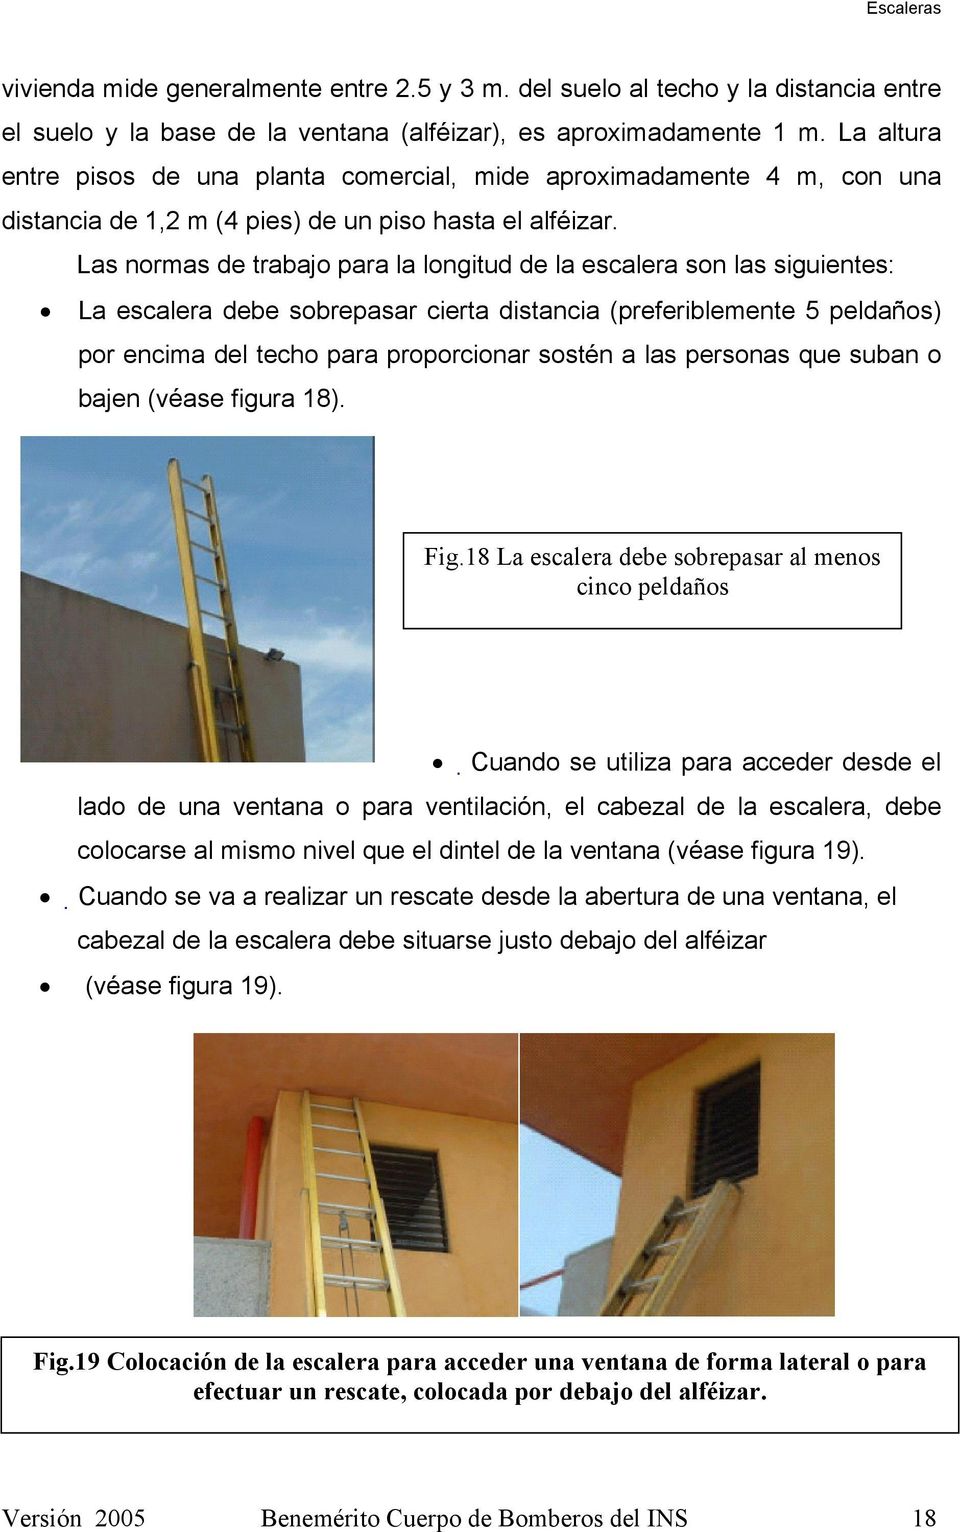 Las normas de trabajo para la longitud de la escalera son las siguientes: La escalera debe sobrepasar cierta distancia (preferiblemente 5 peldaños) por encima del techo para proporcionar sostén a las